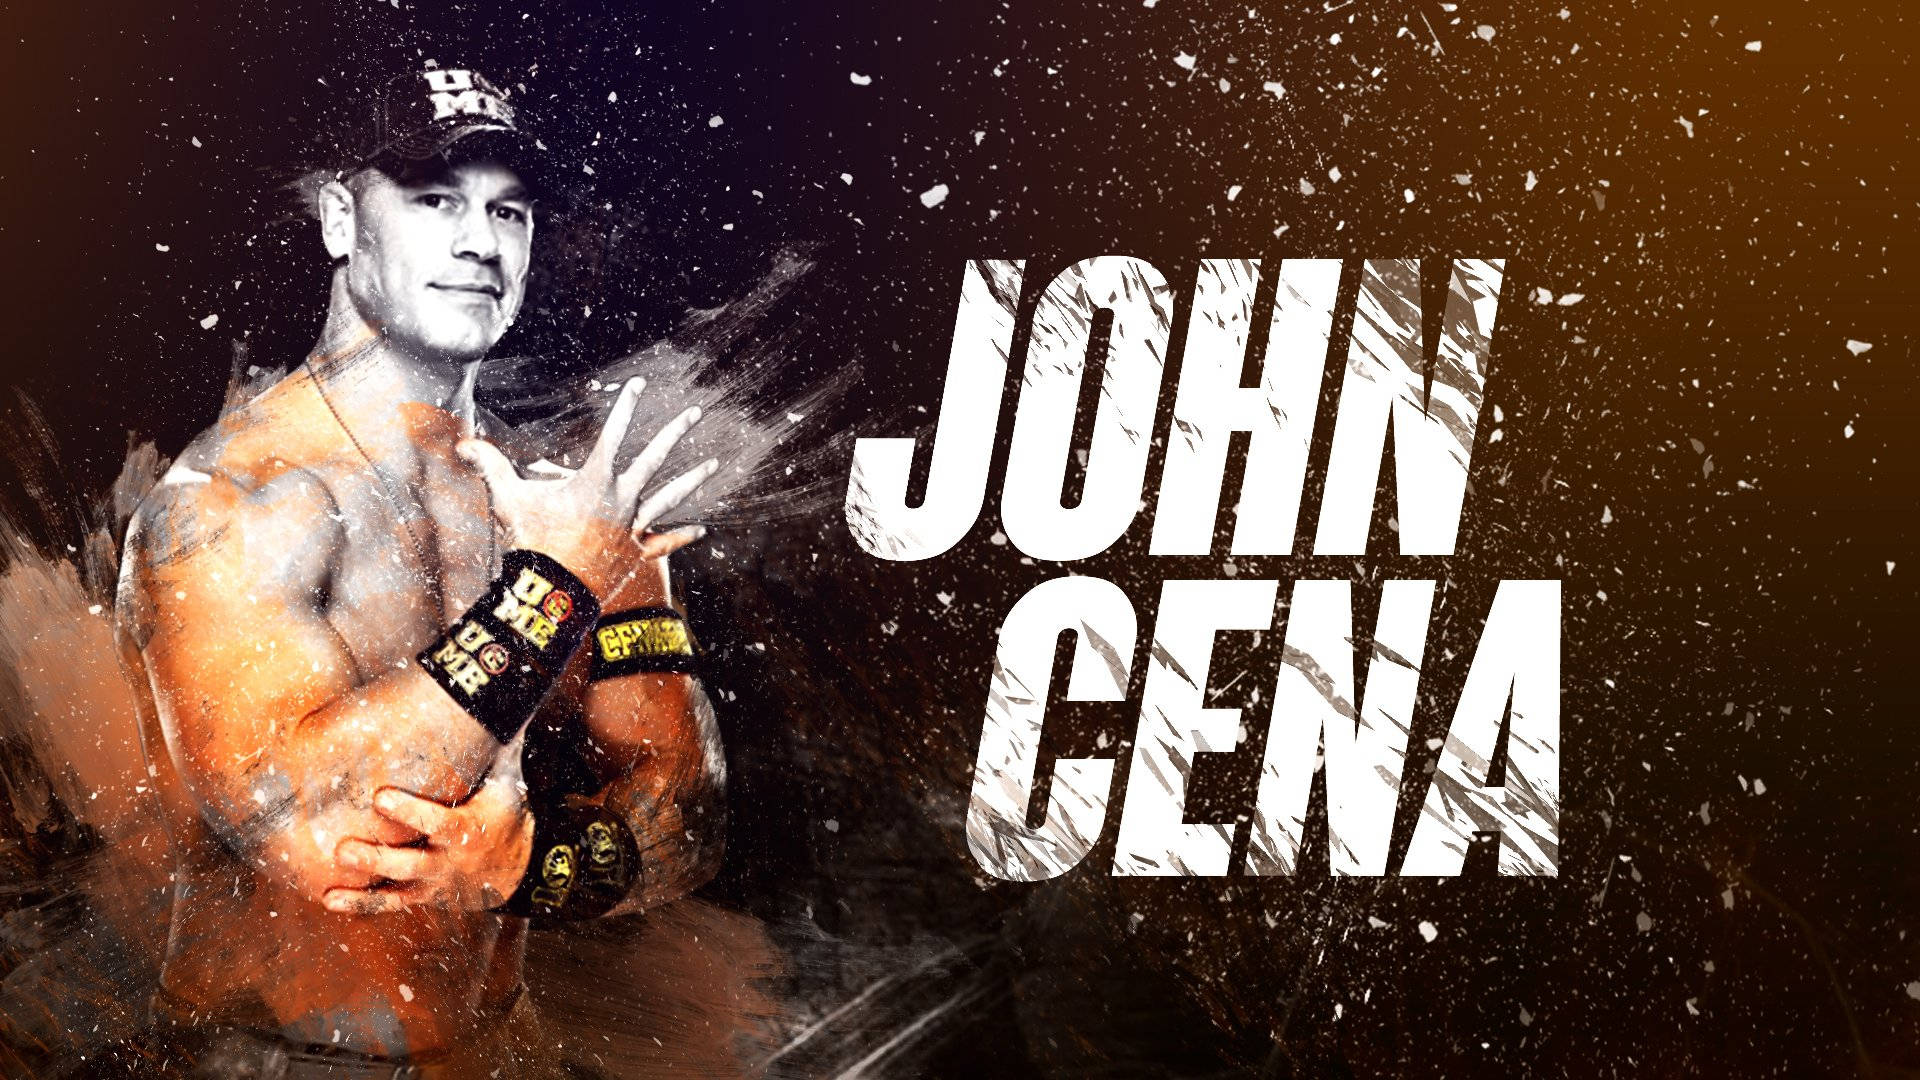 John Cena Wallpaper for FREE